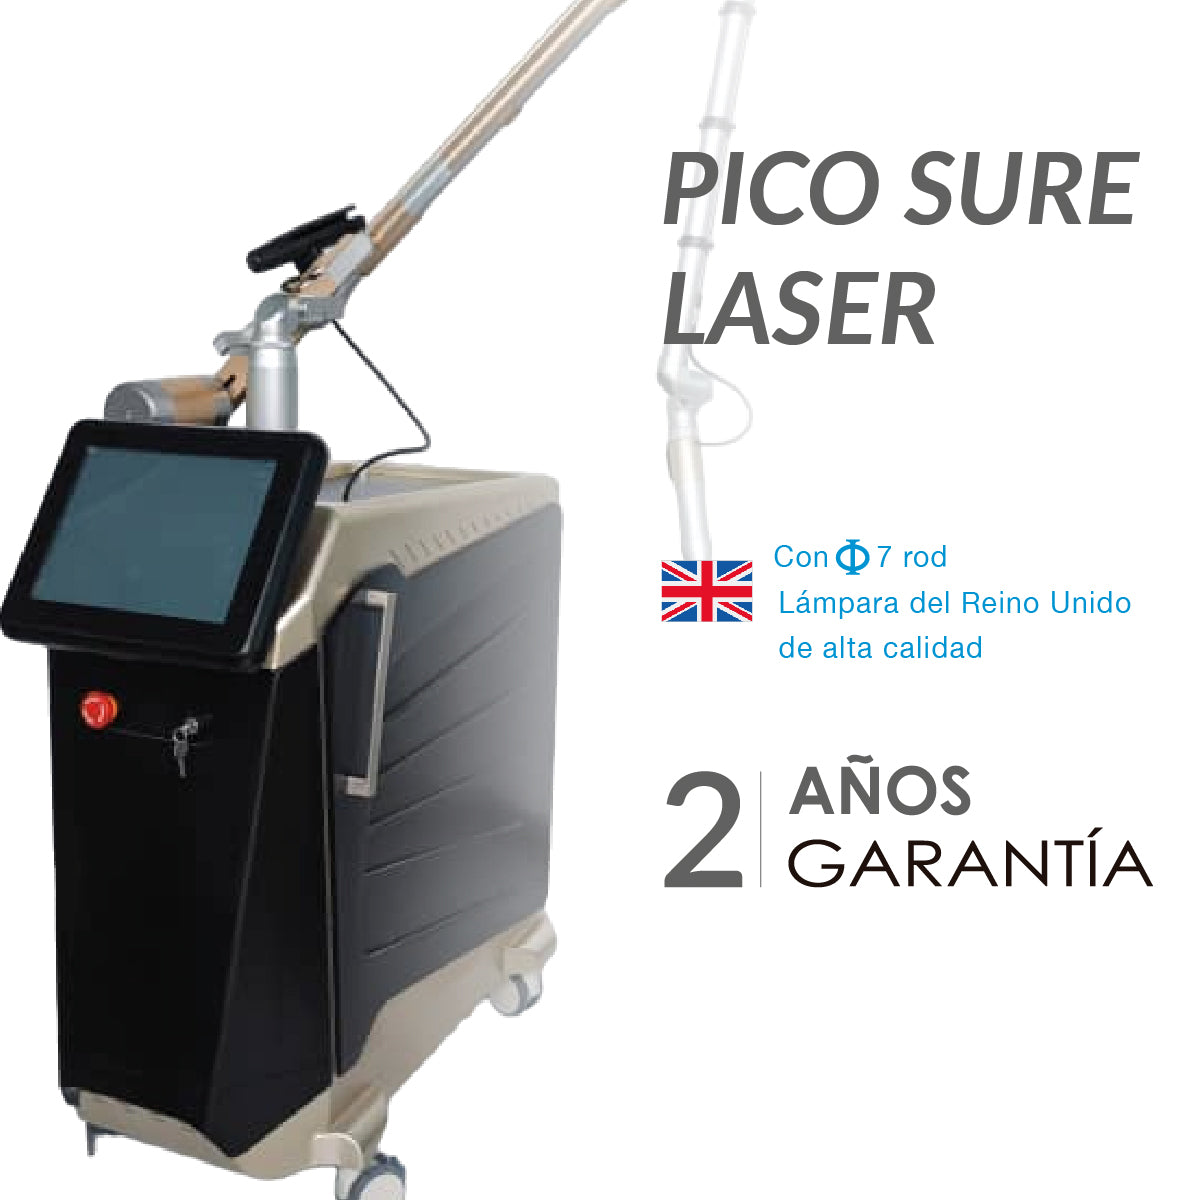 Pico Sure Laser